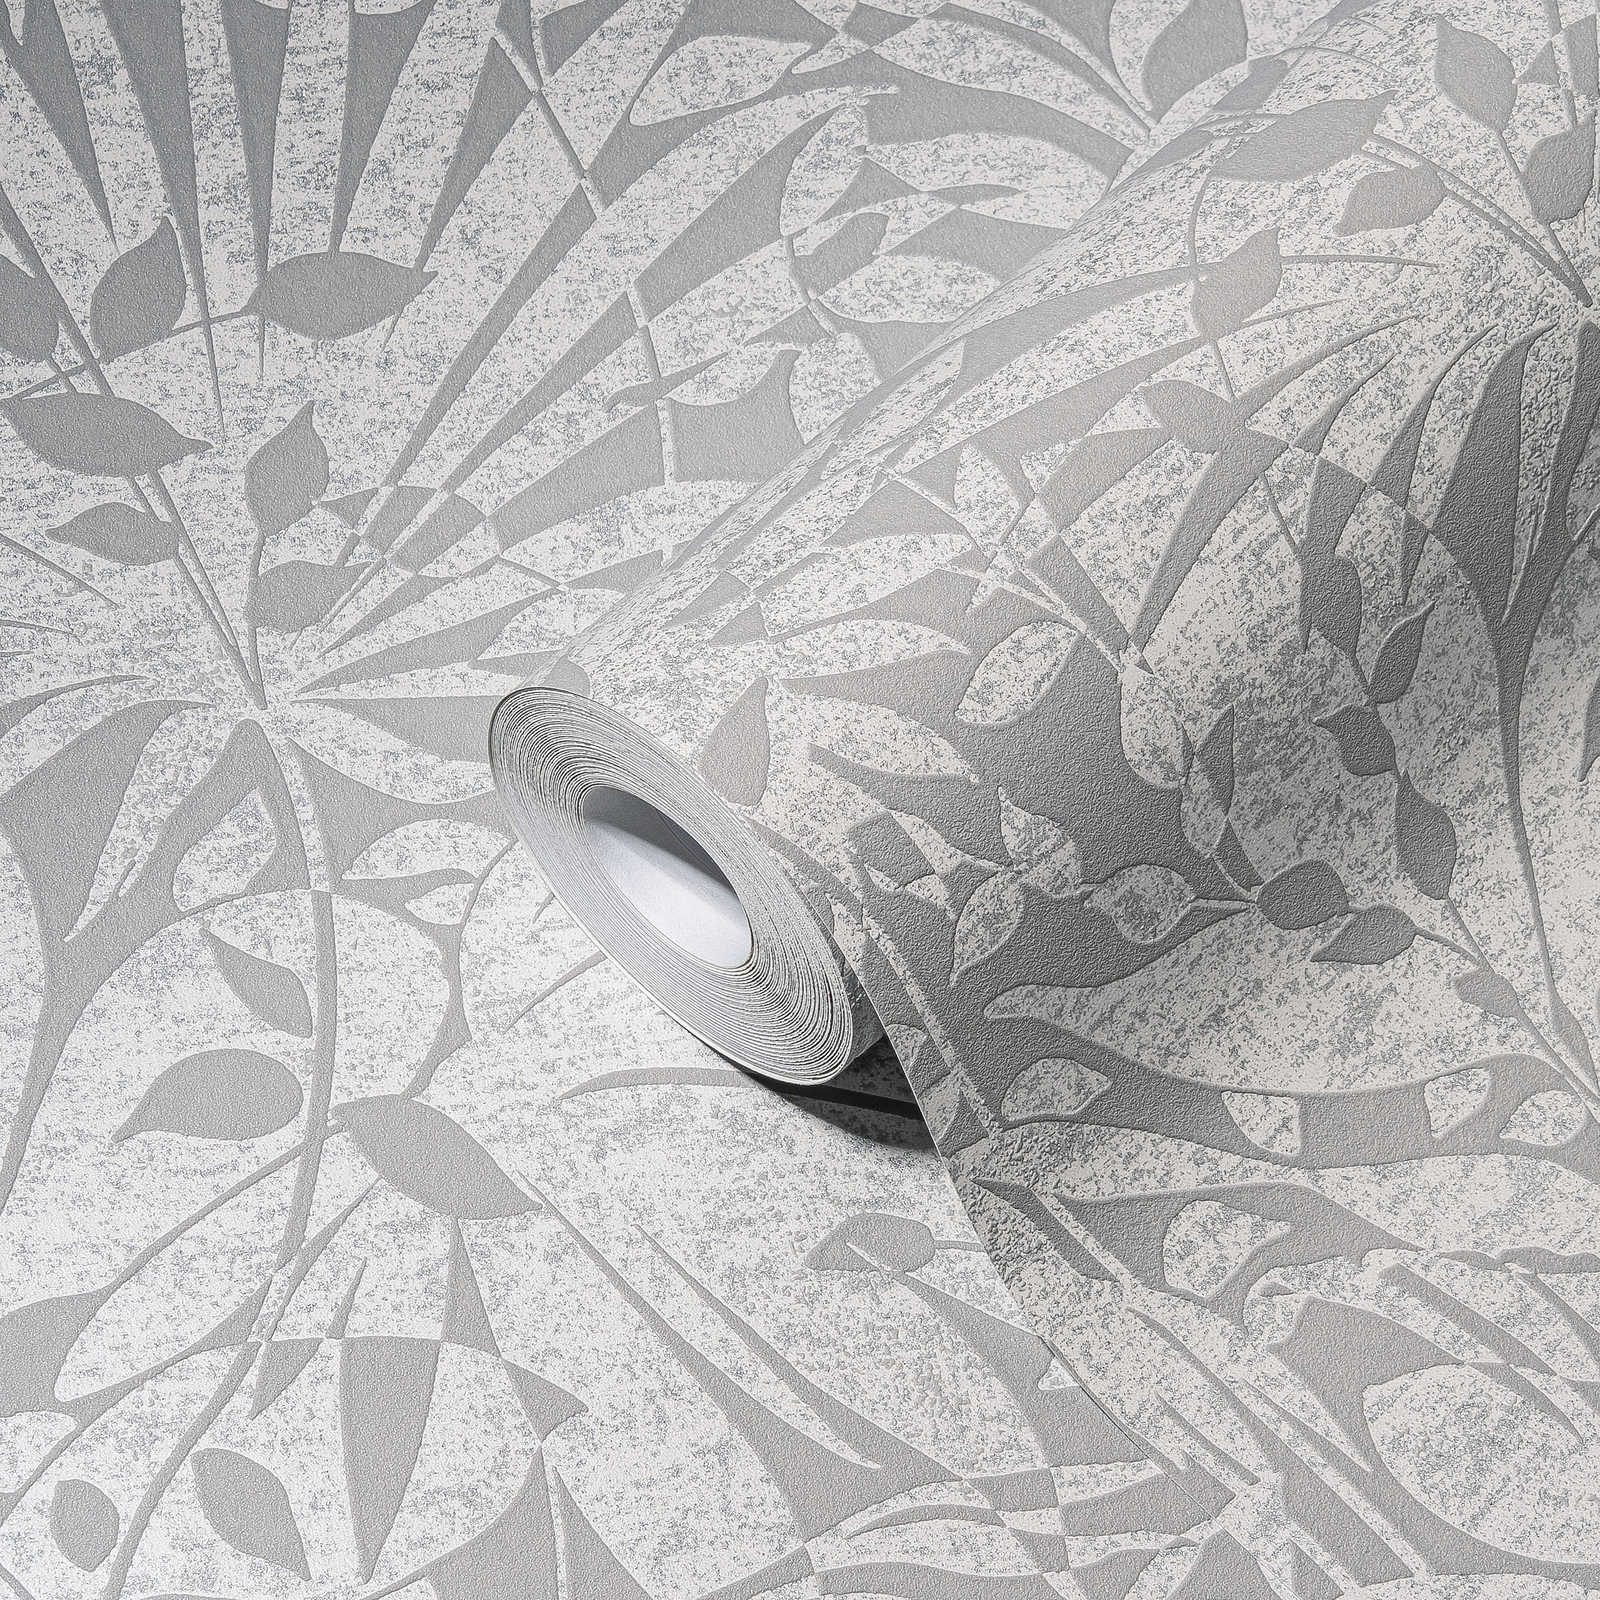             Papel pintado de hojas grises con detalles de estructura y efecto metálico
        